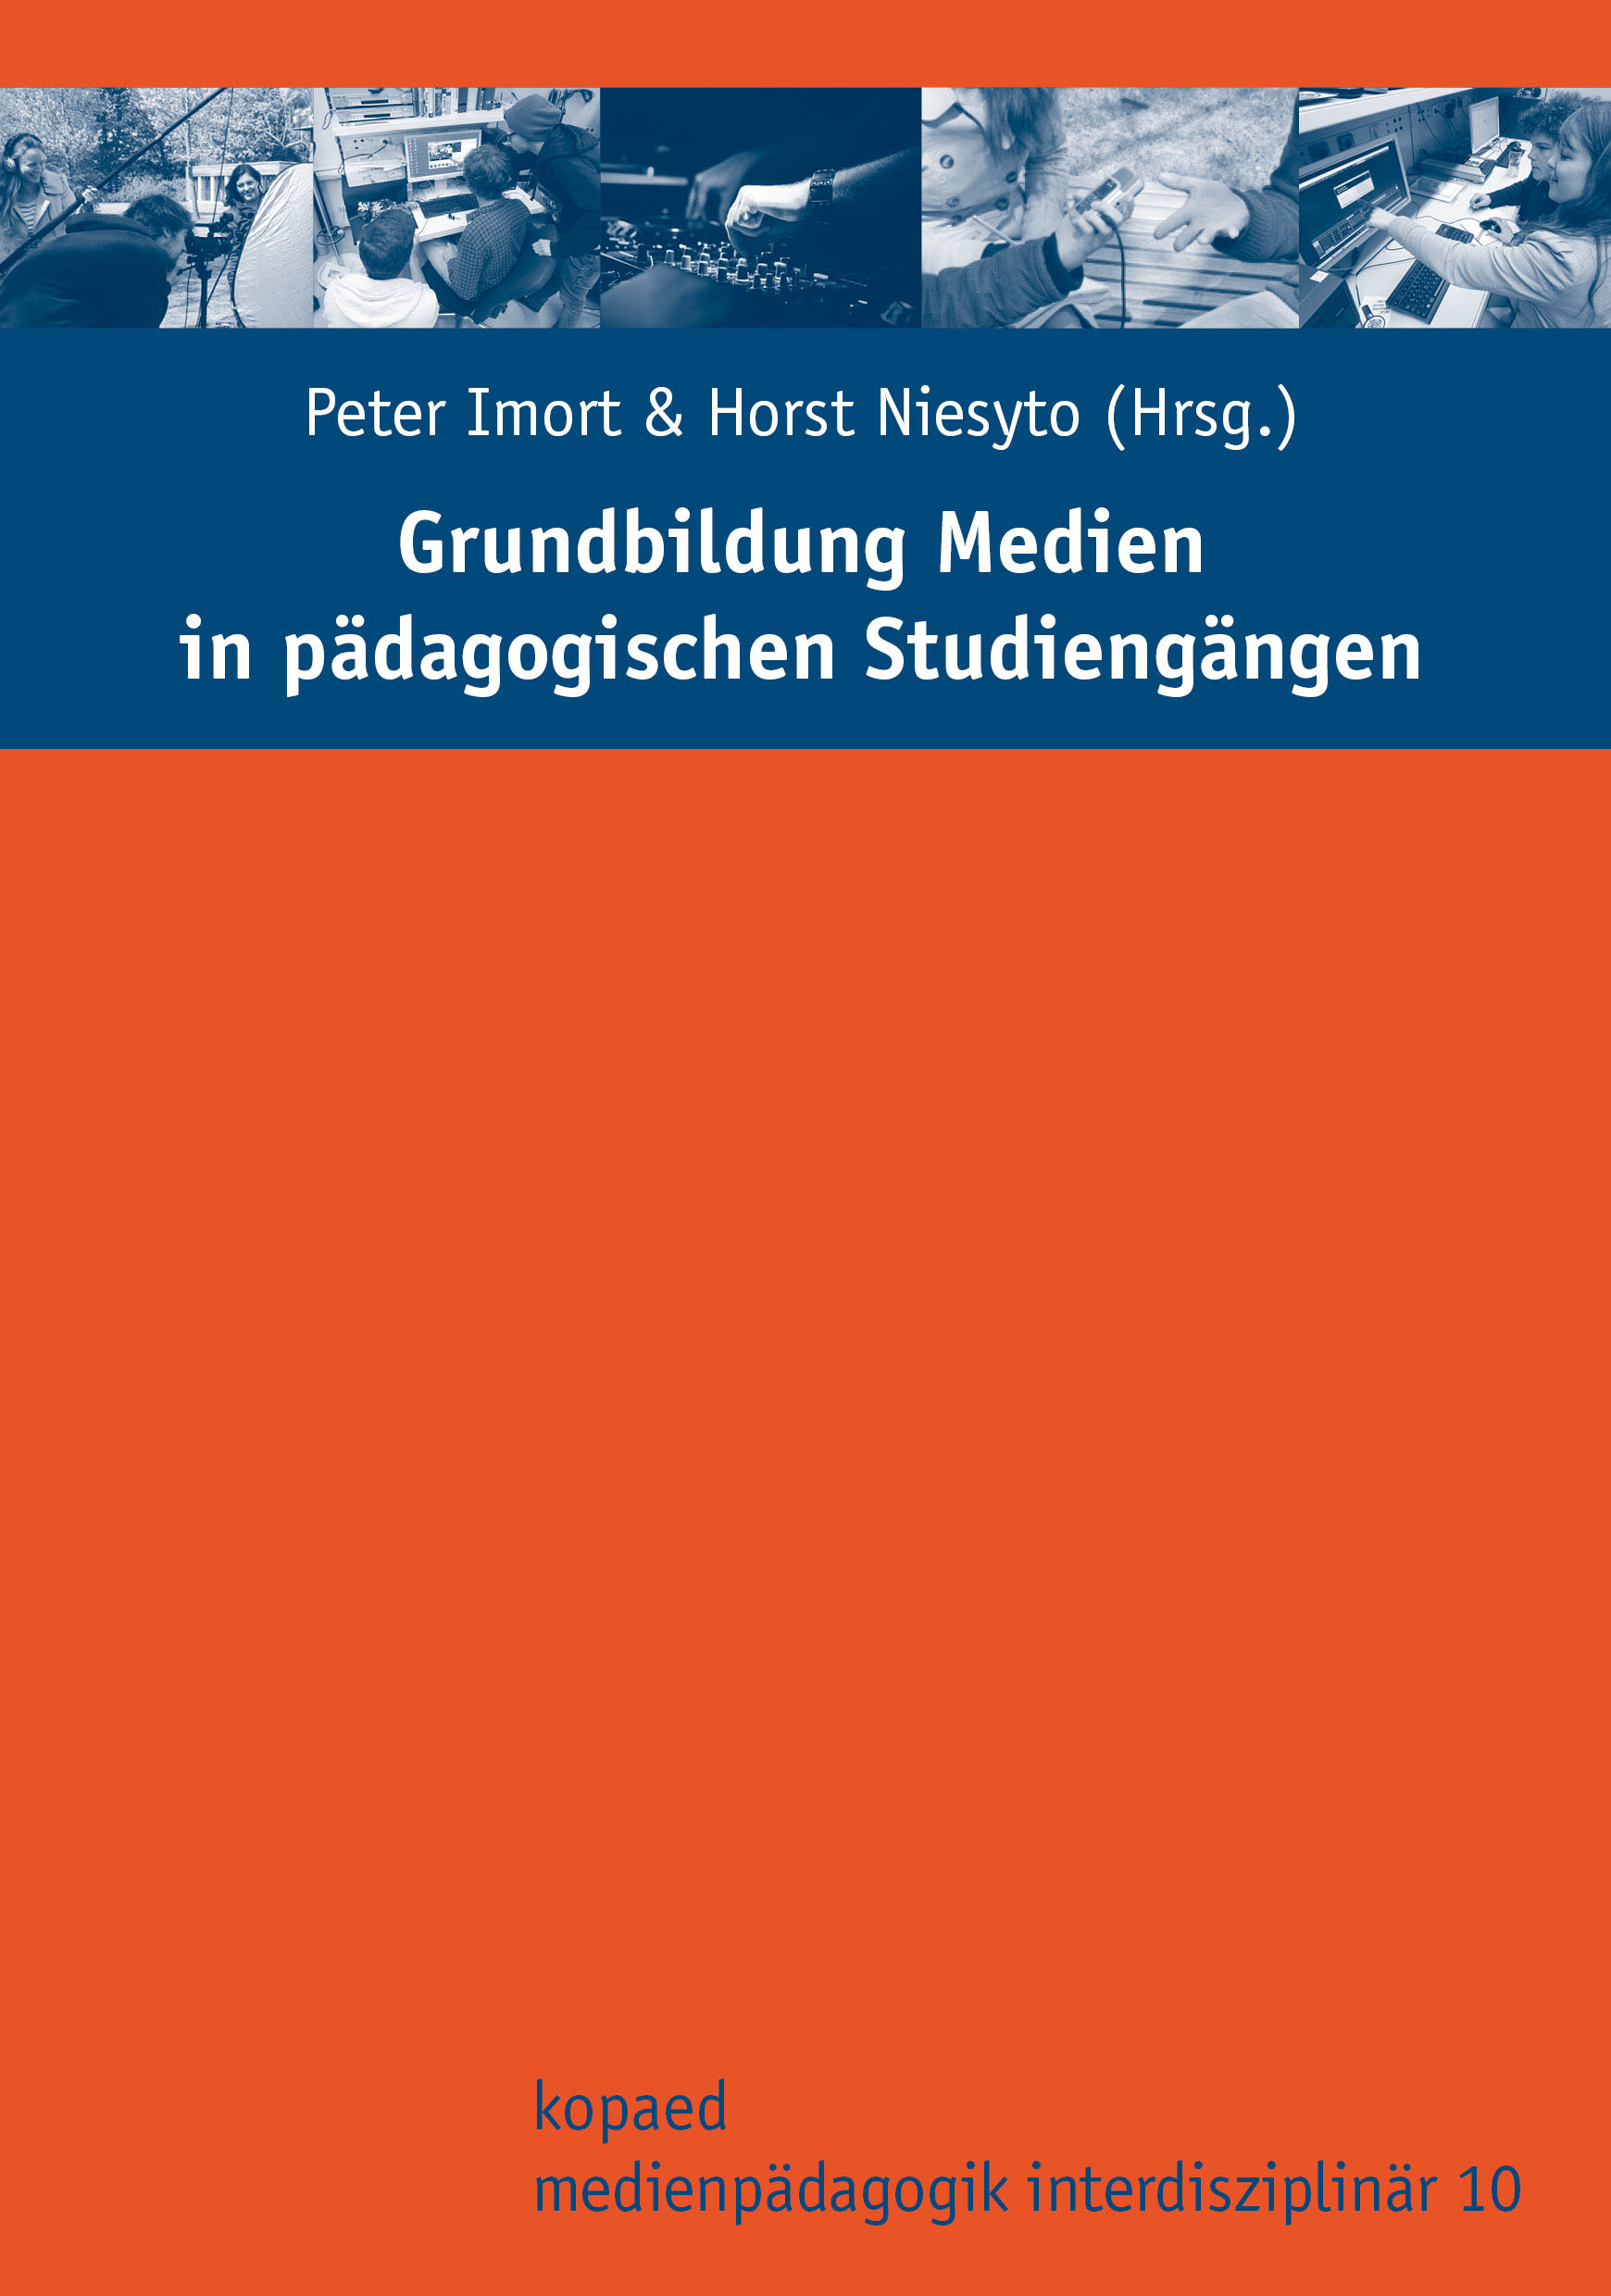 Titelseite des Sammelbandes "Grundbidlung Medien in pädagogischen Studiengängen"